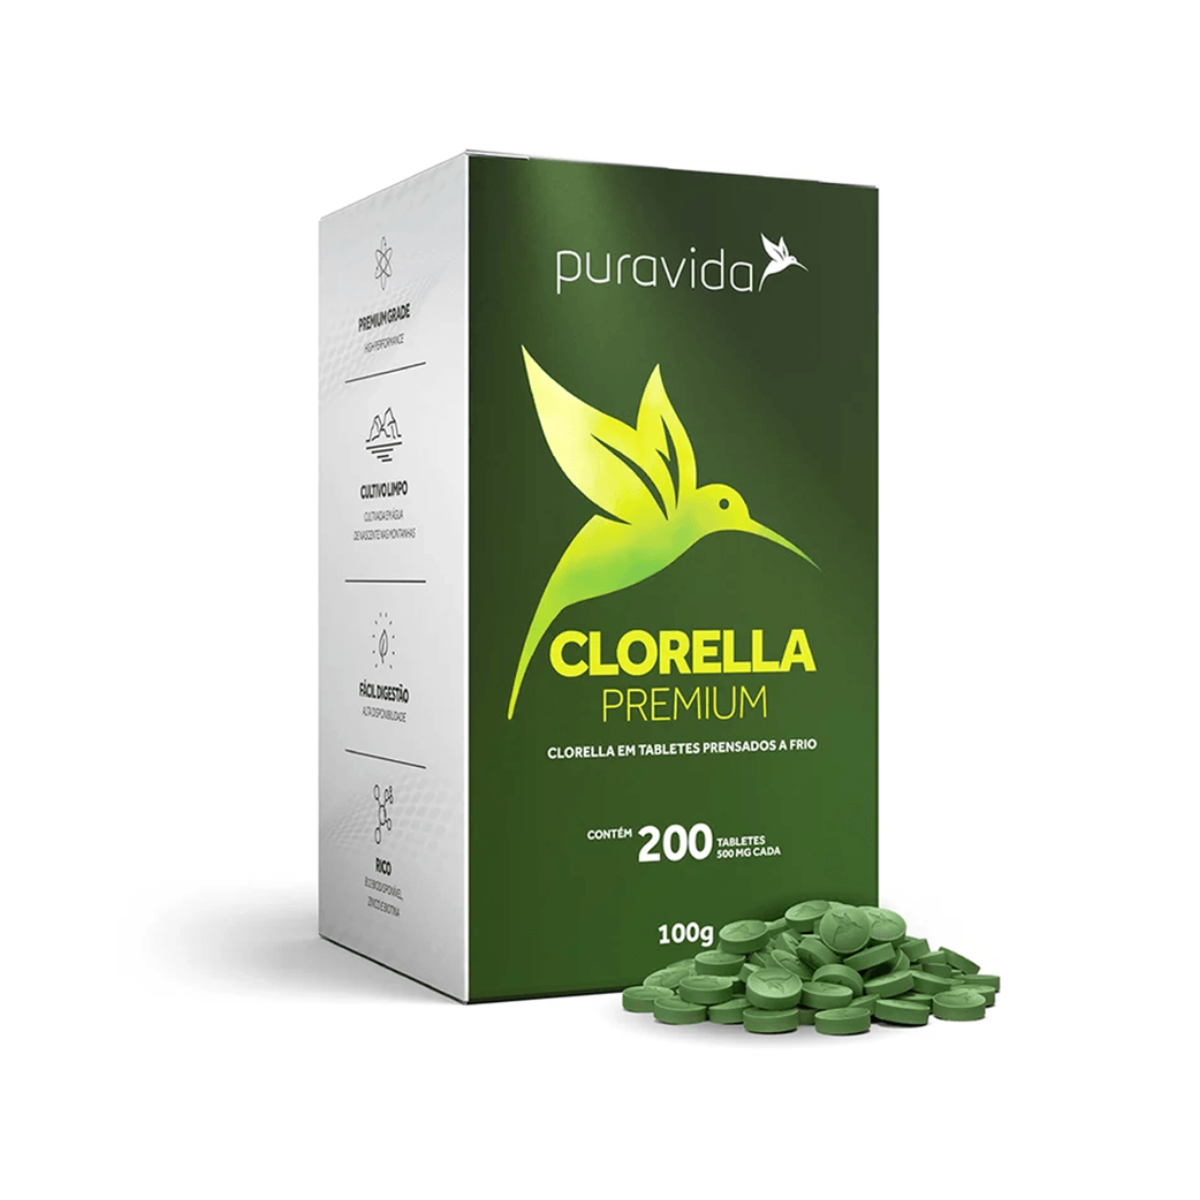 CLORELLA PREMIUM 200 Tabletes - Puravida